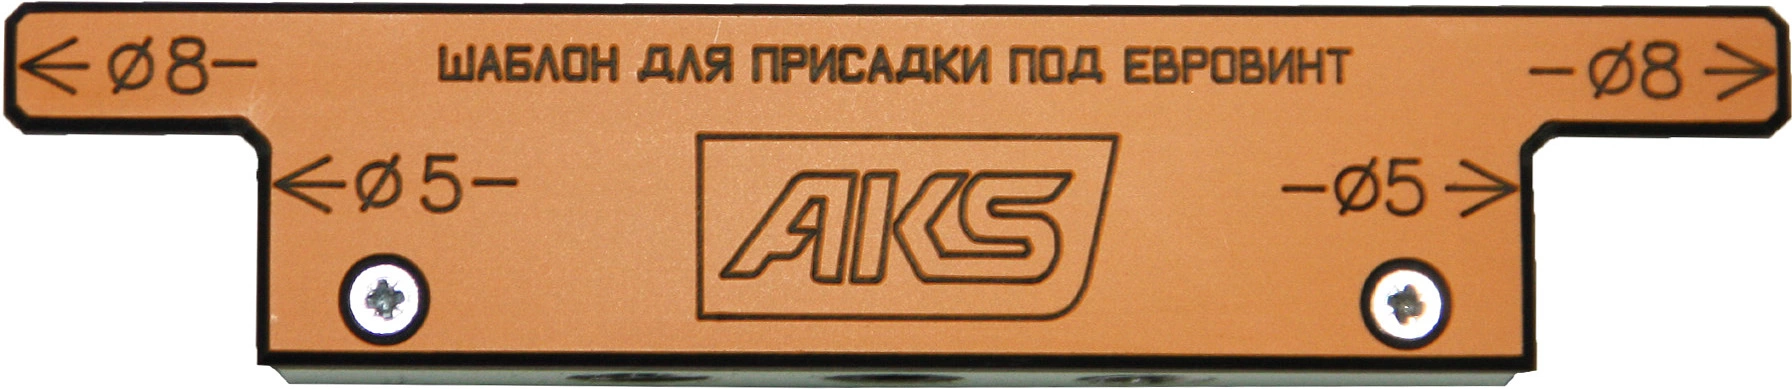 Шаблон/кондуктор для присадки под конфирмат AKS - фото 1